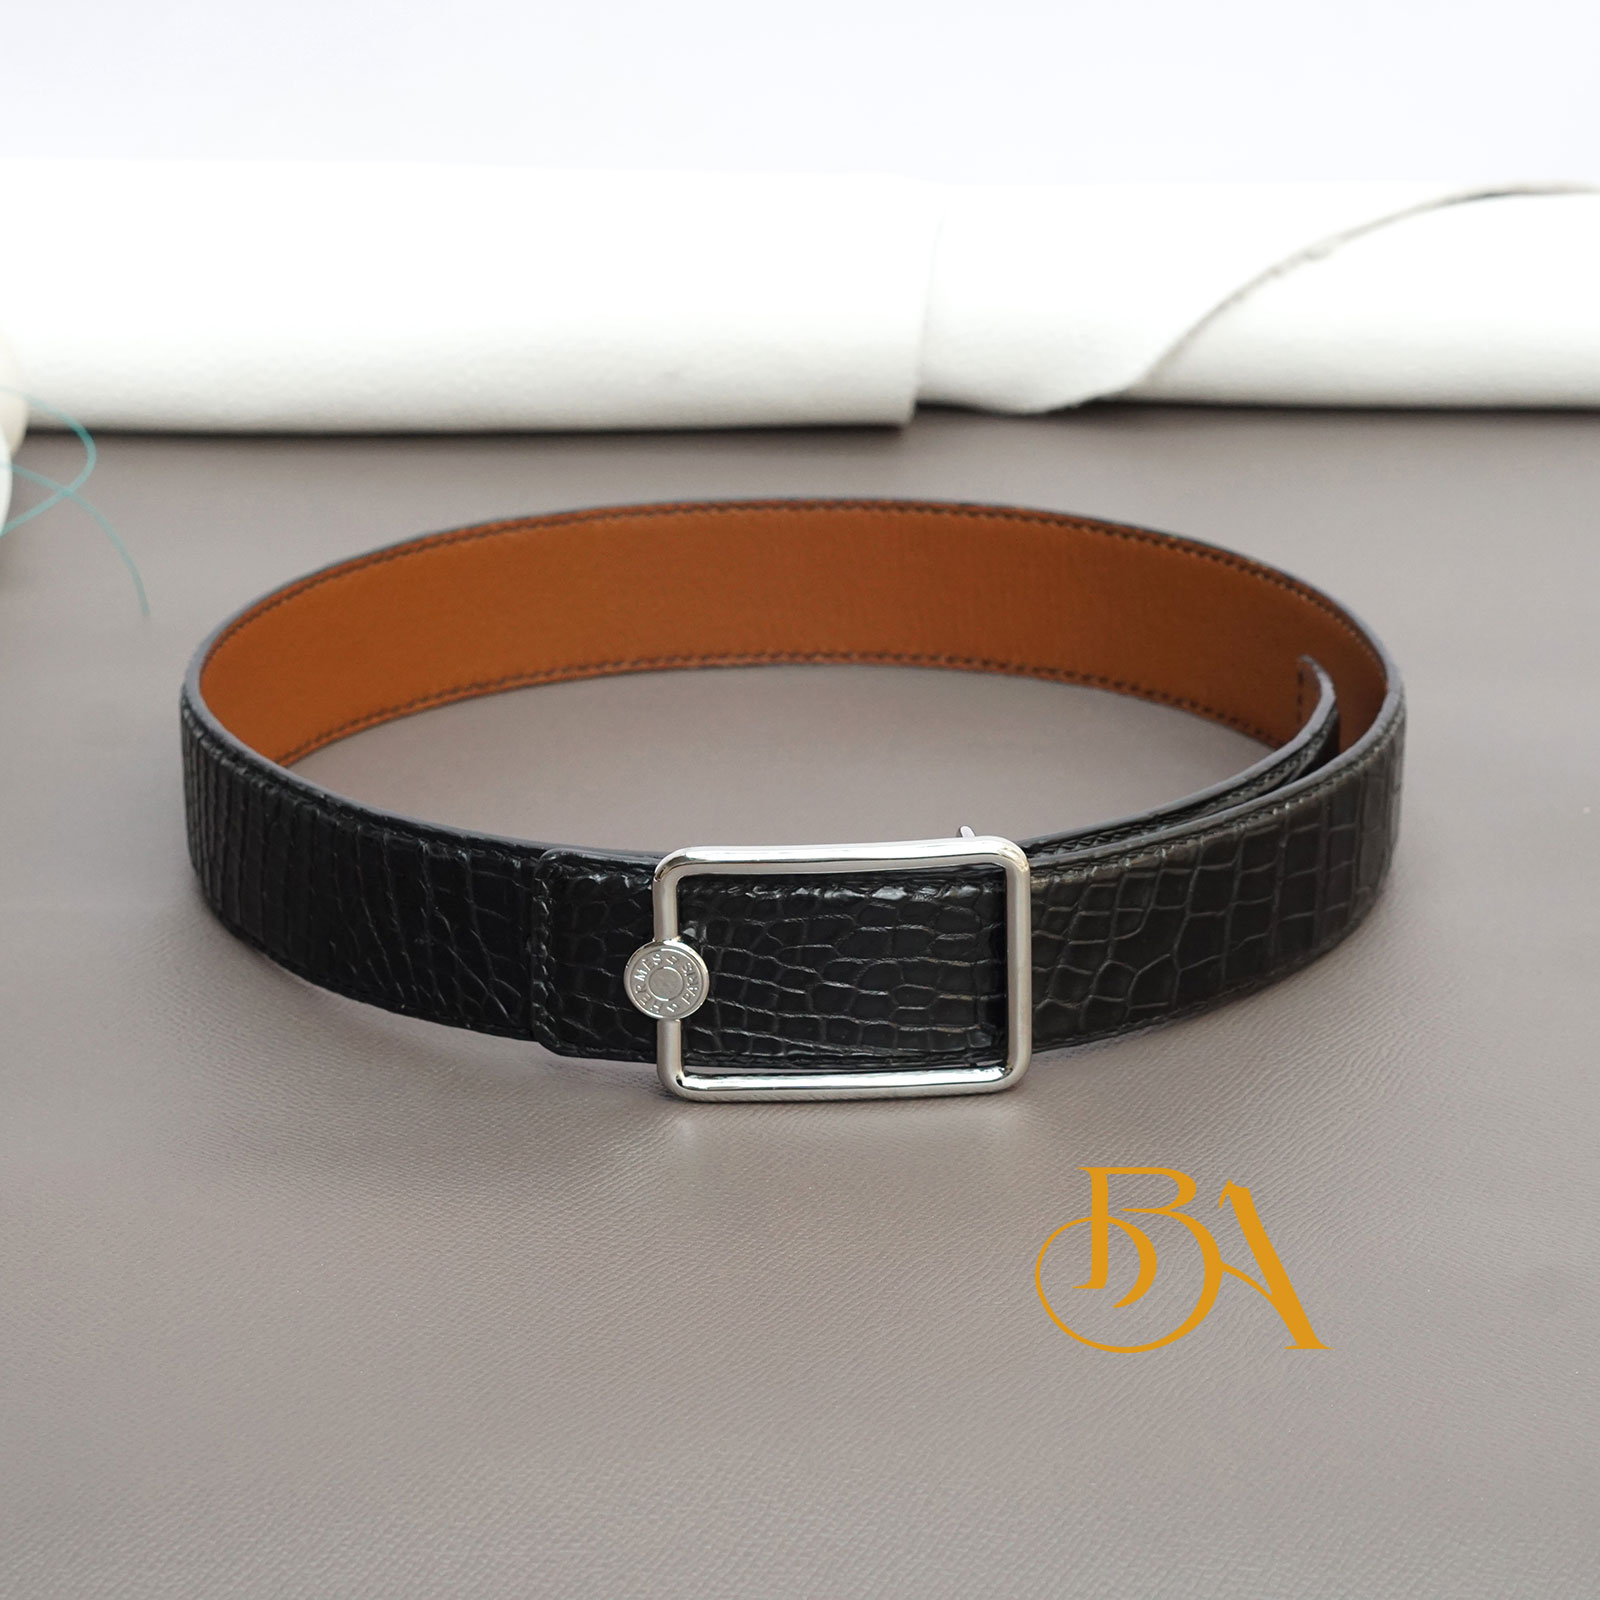 Premium Alligator leather belt, dress leather belt handcrafted BLB09